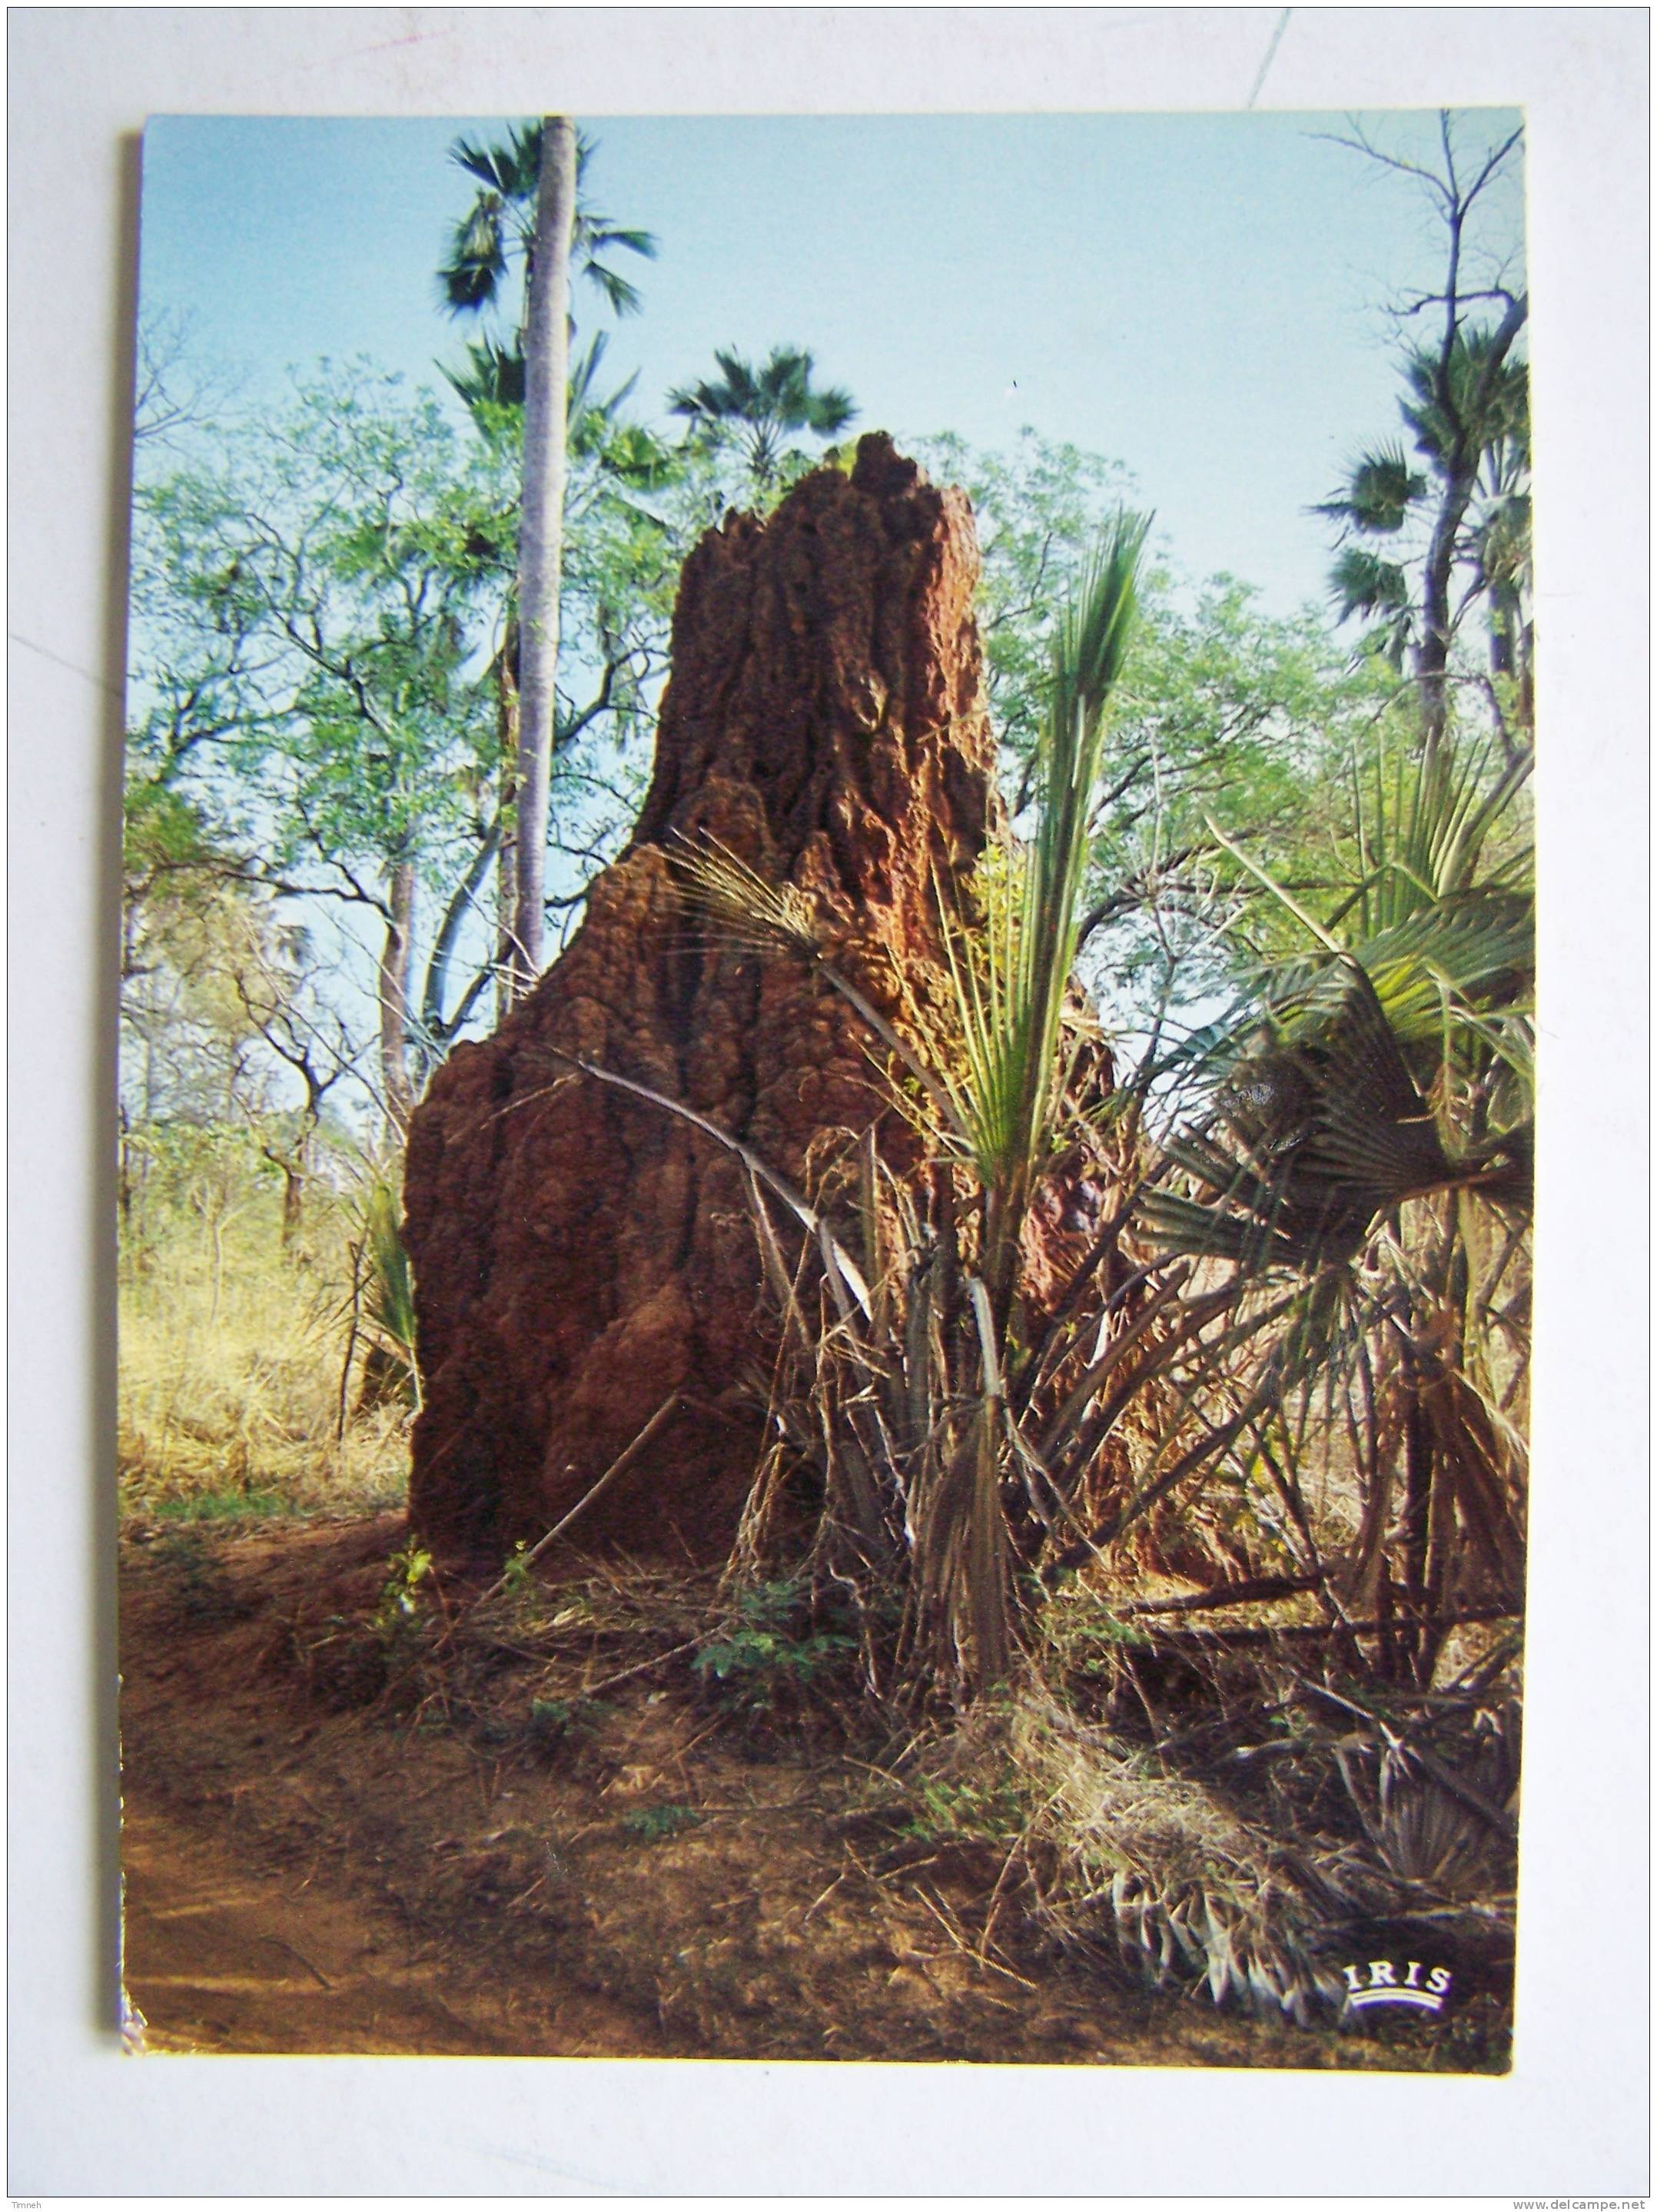 N°8218.BANGUI - AFRIQUE EN COULEURS Termitière En Brousse 1981 -IRIS - - Centrafricaine (République)